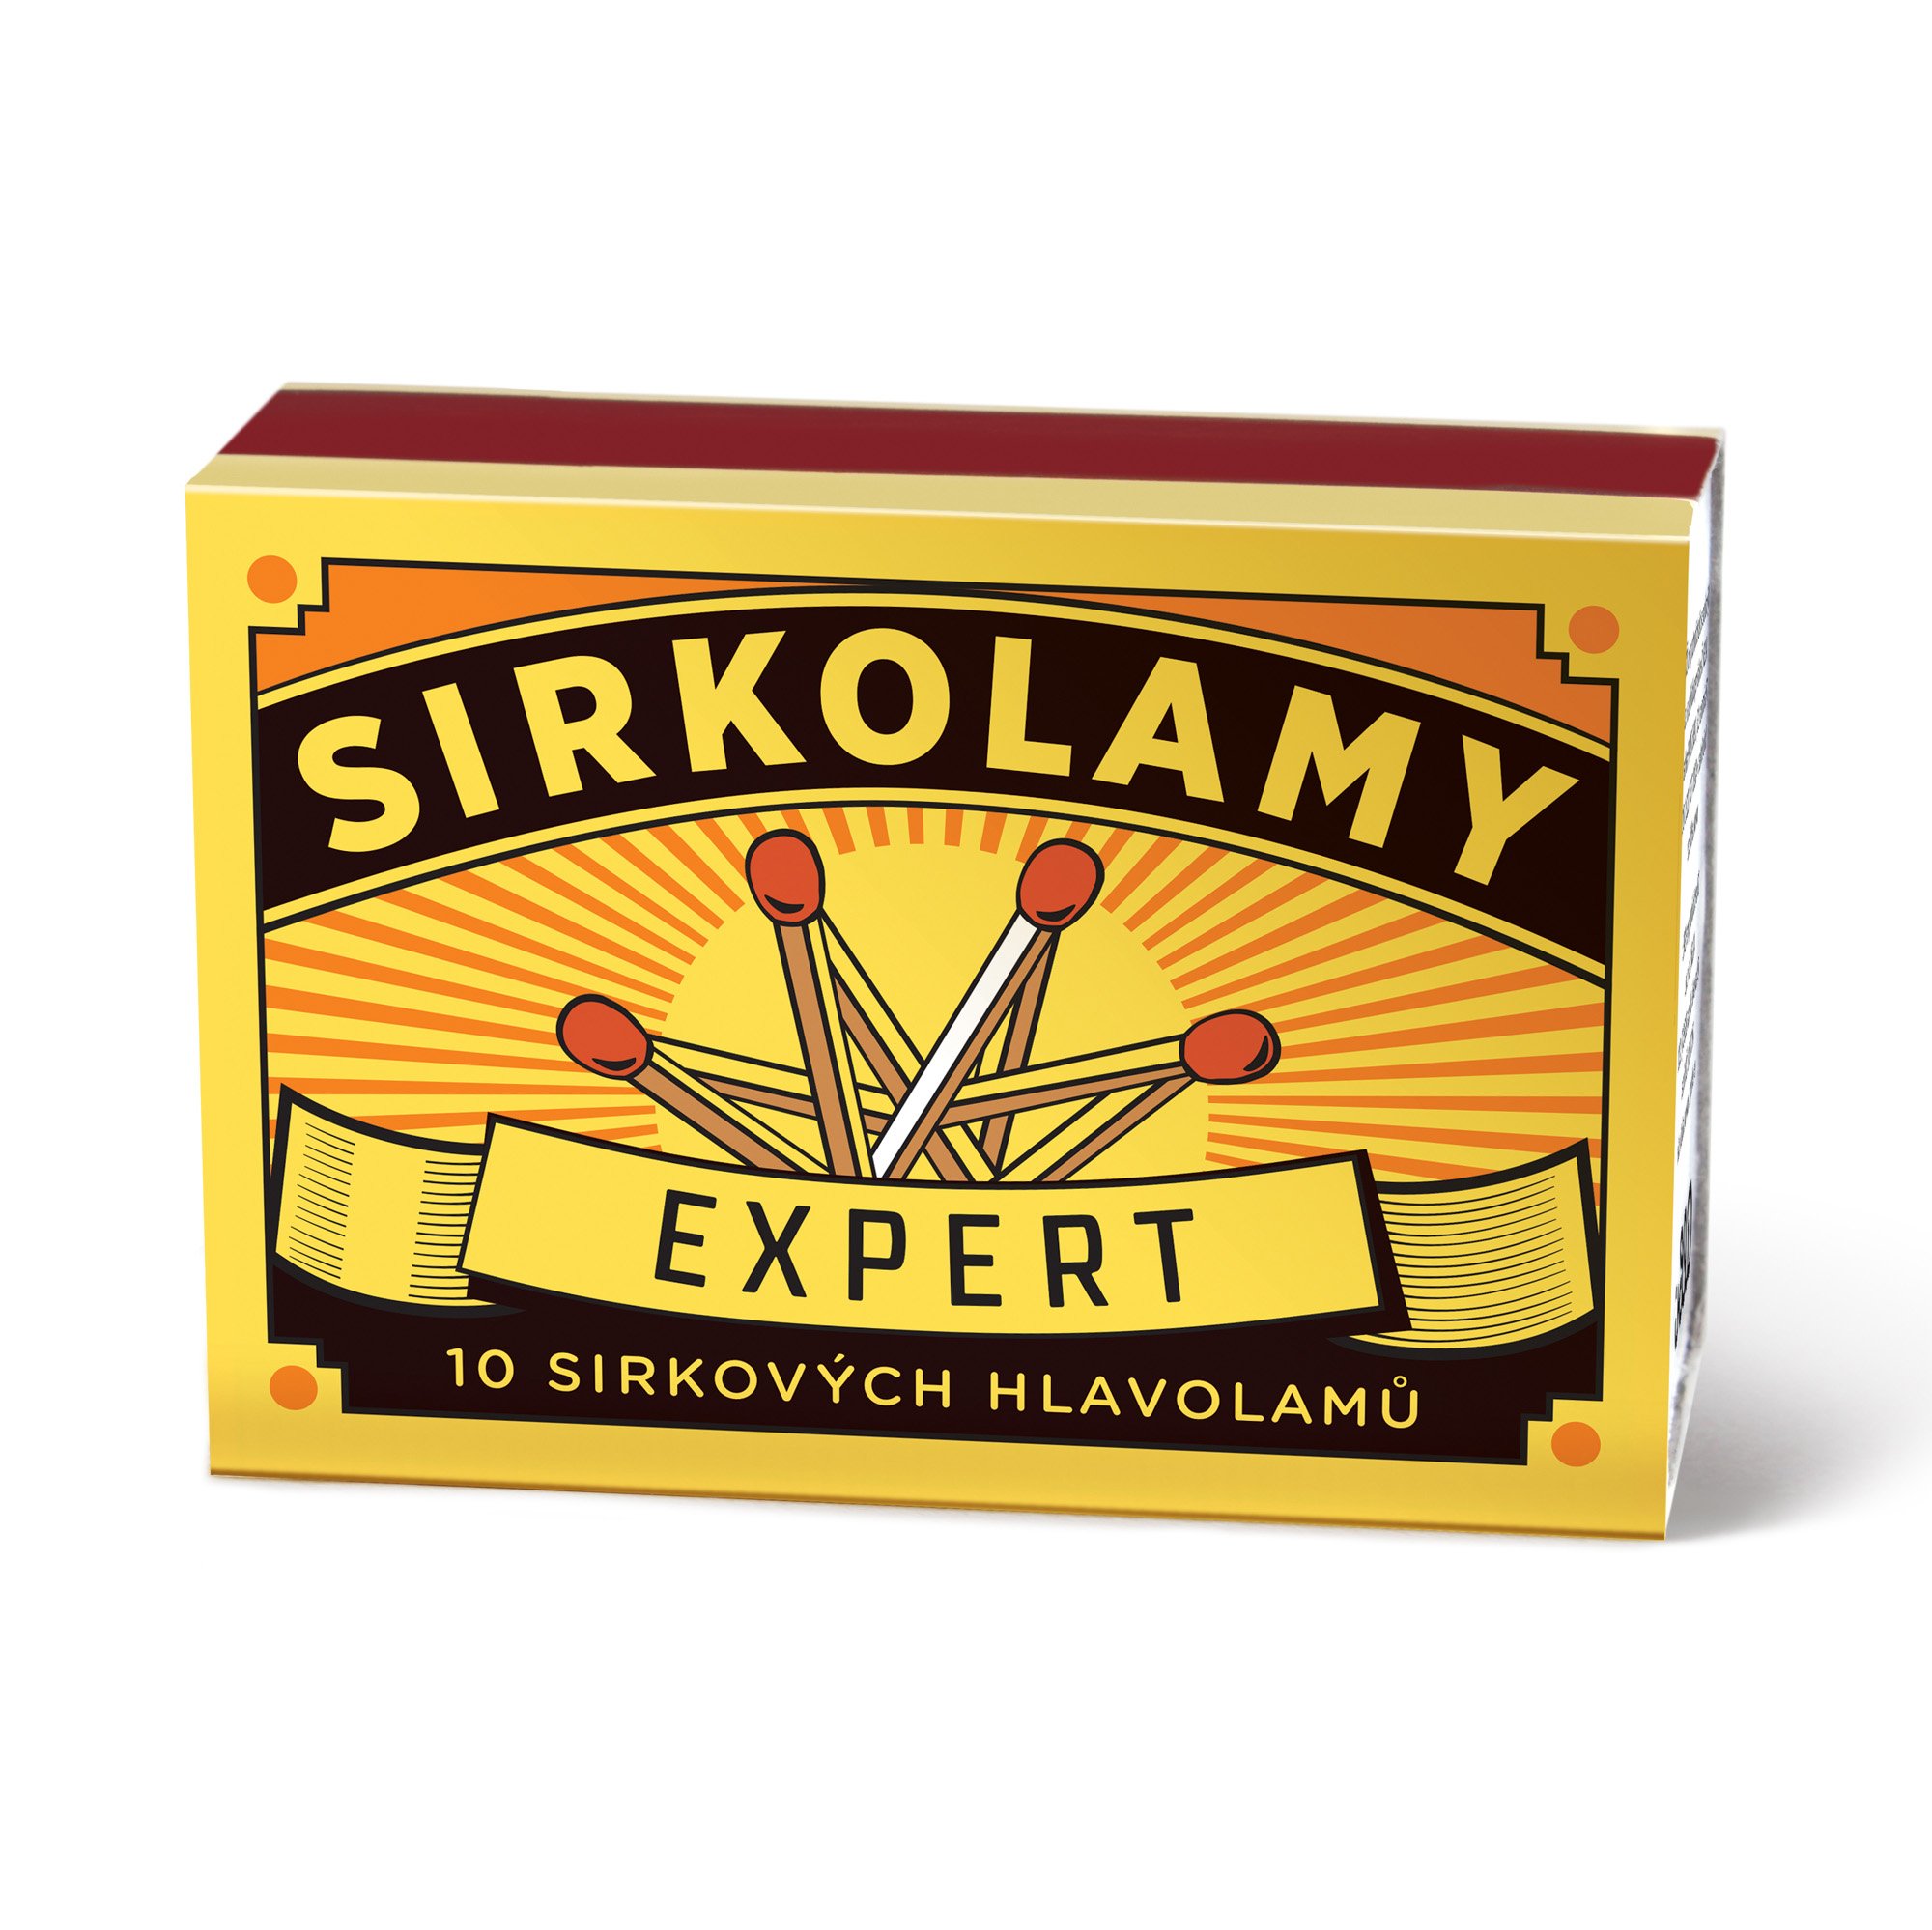 Albi Sirkolamy - Expert - Albi